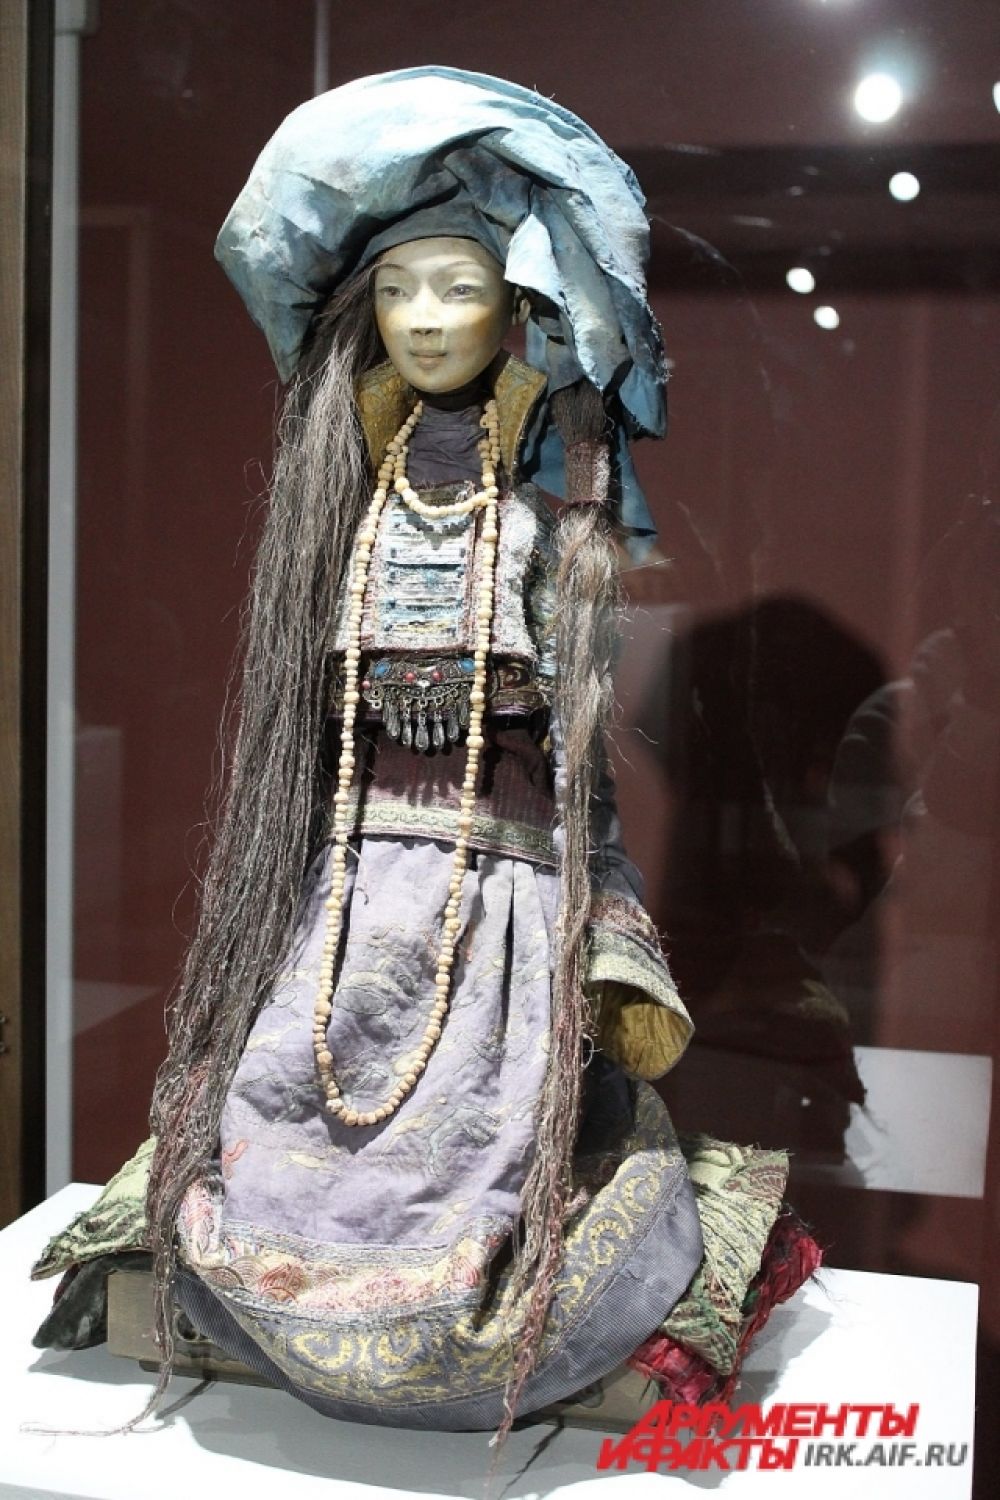  Одежда и атрибуты для кукол полностью воплощают национальные традиции и ритуальное назначение.